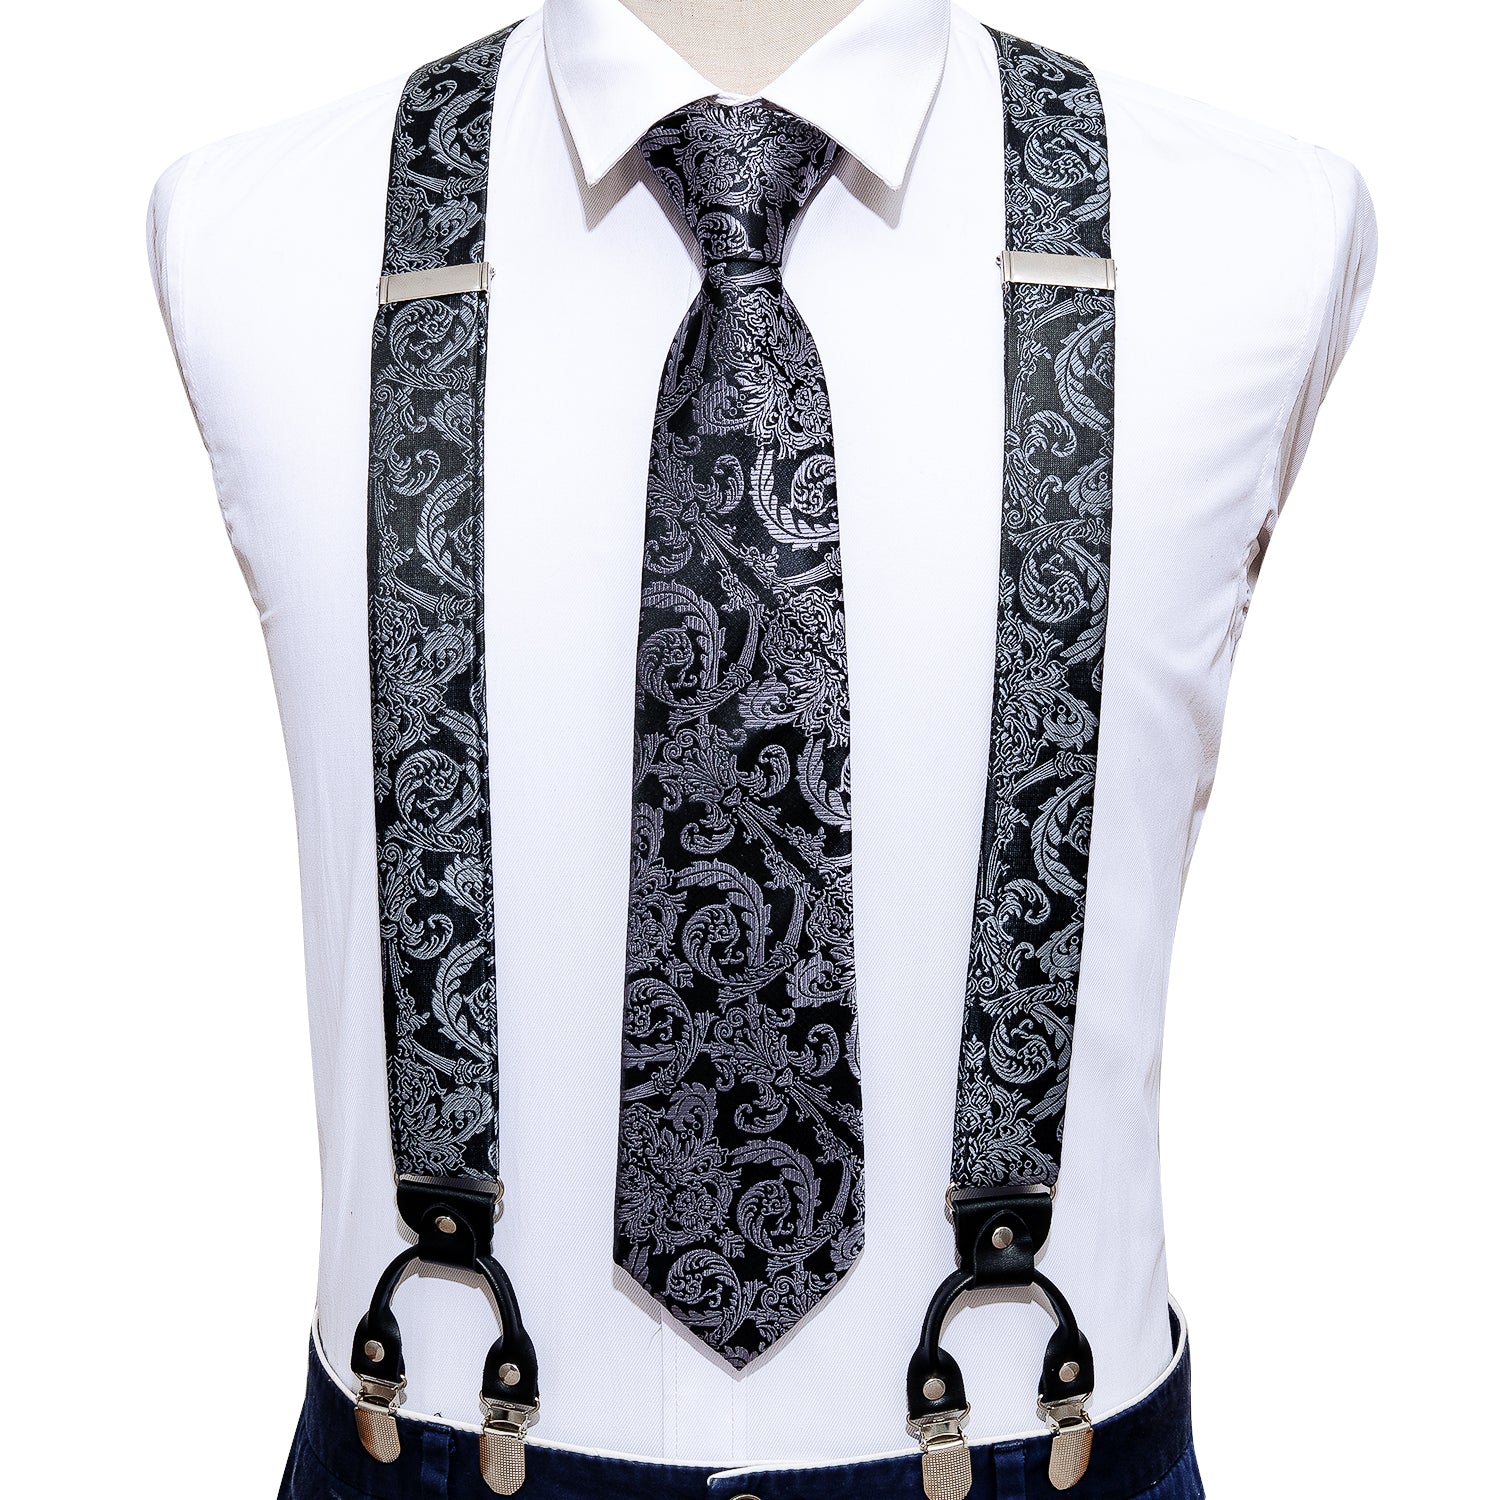 Black Grey Floral Tie Y Back Adjustable Suspenders Tie Set